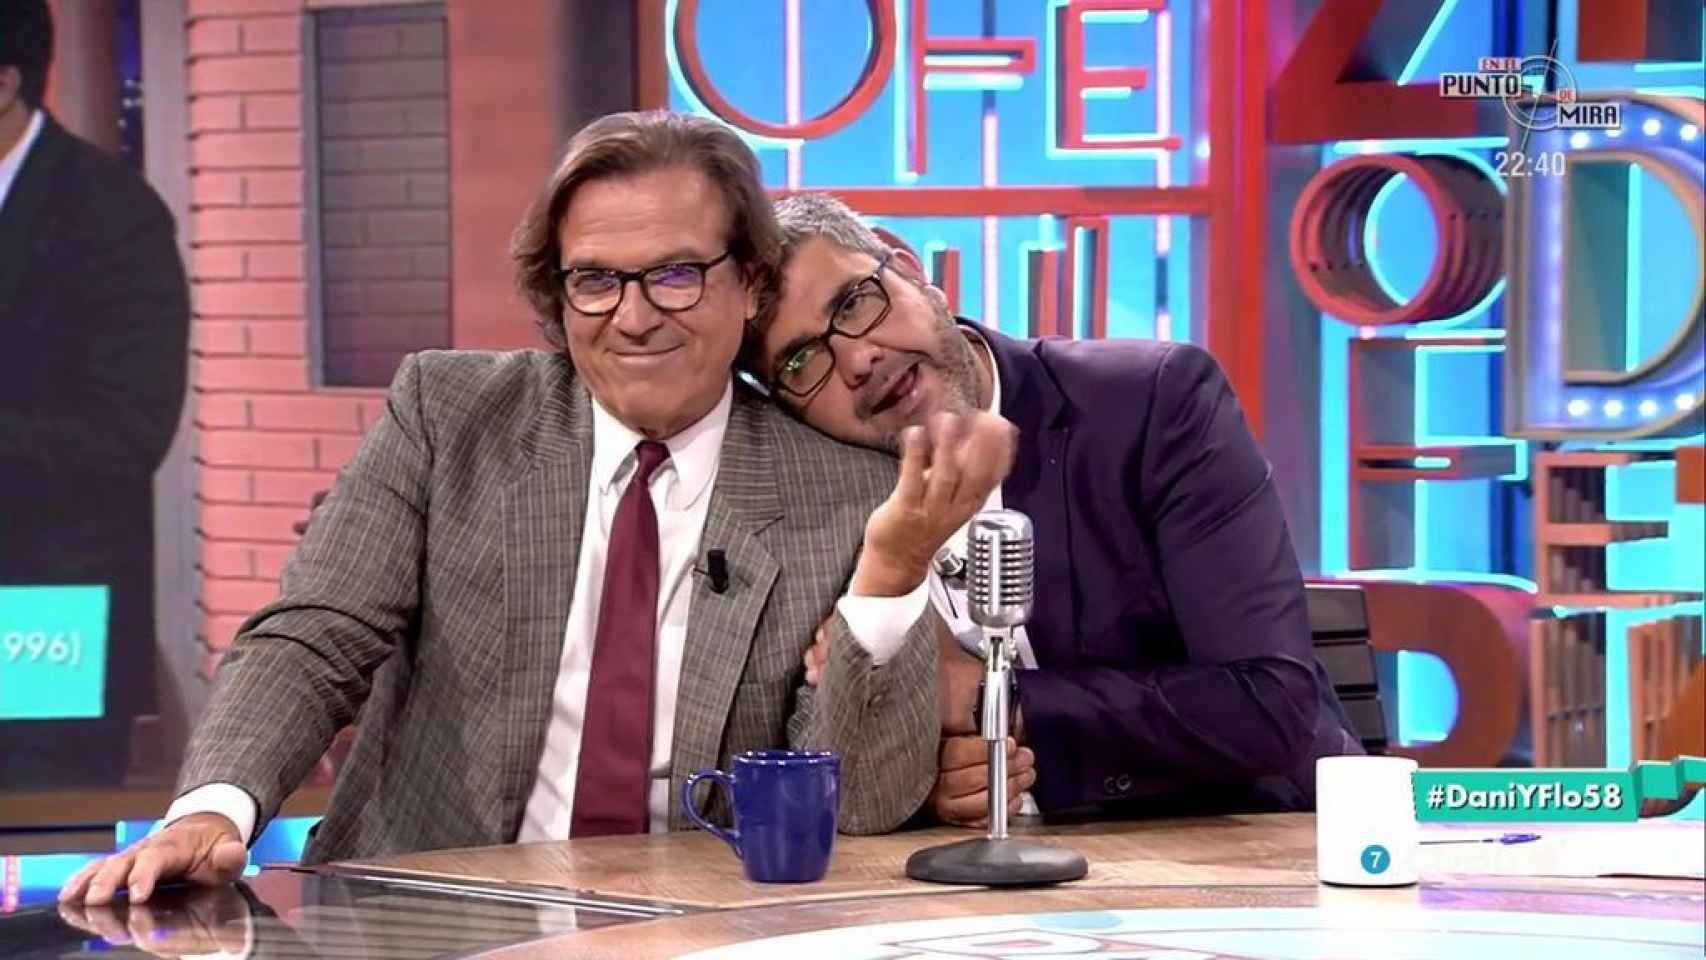 Pepe Navarro y Crispín se reúnen en TV 20 años después